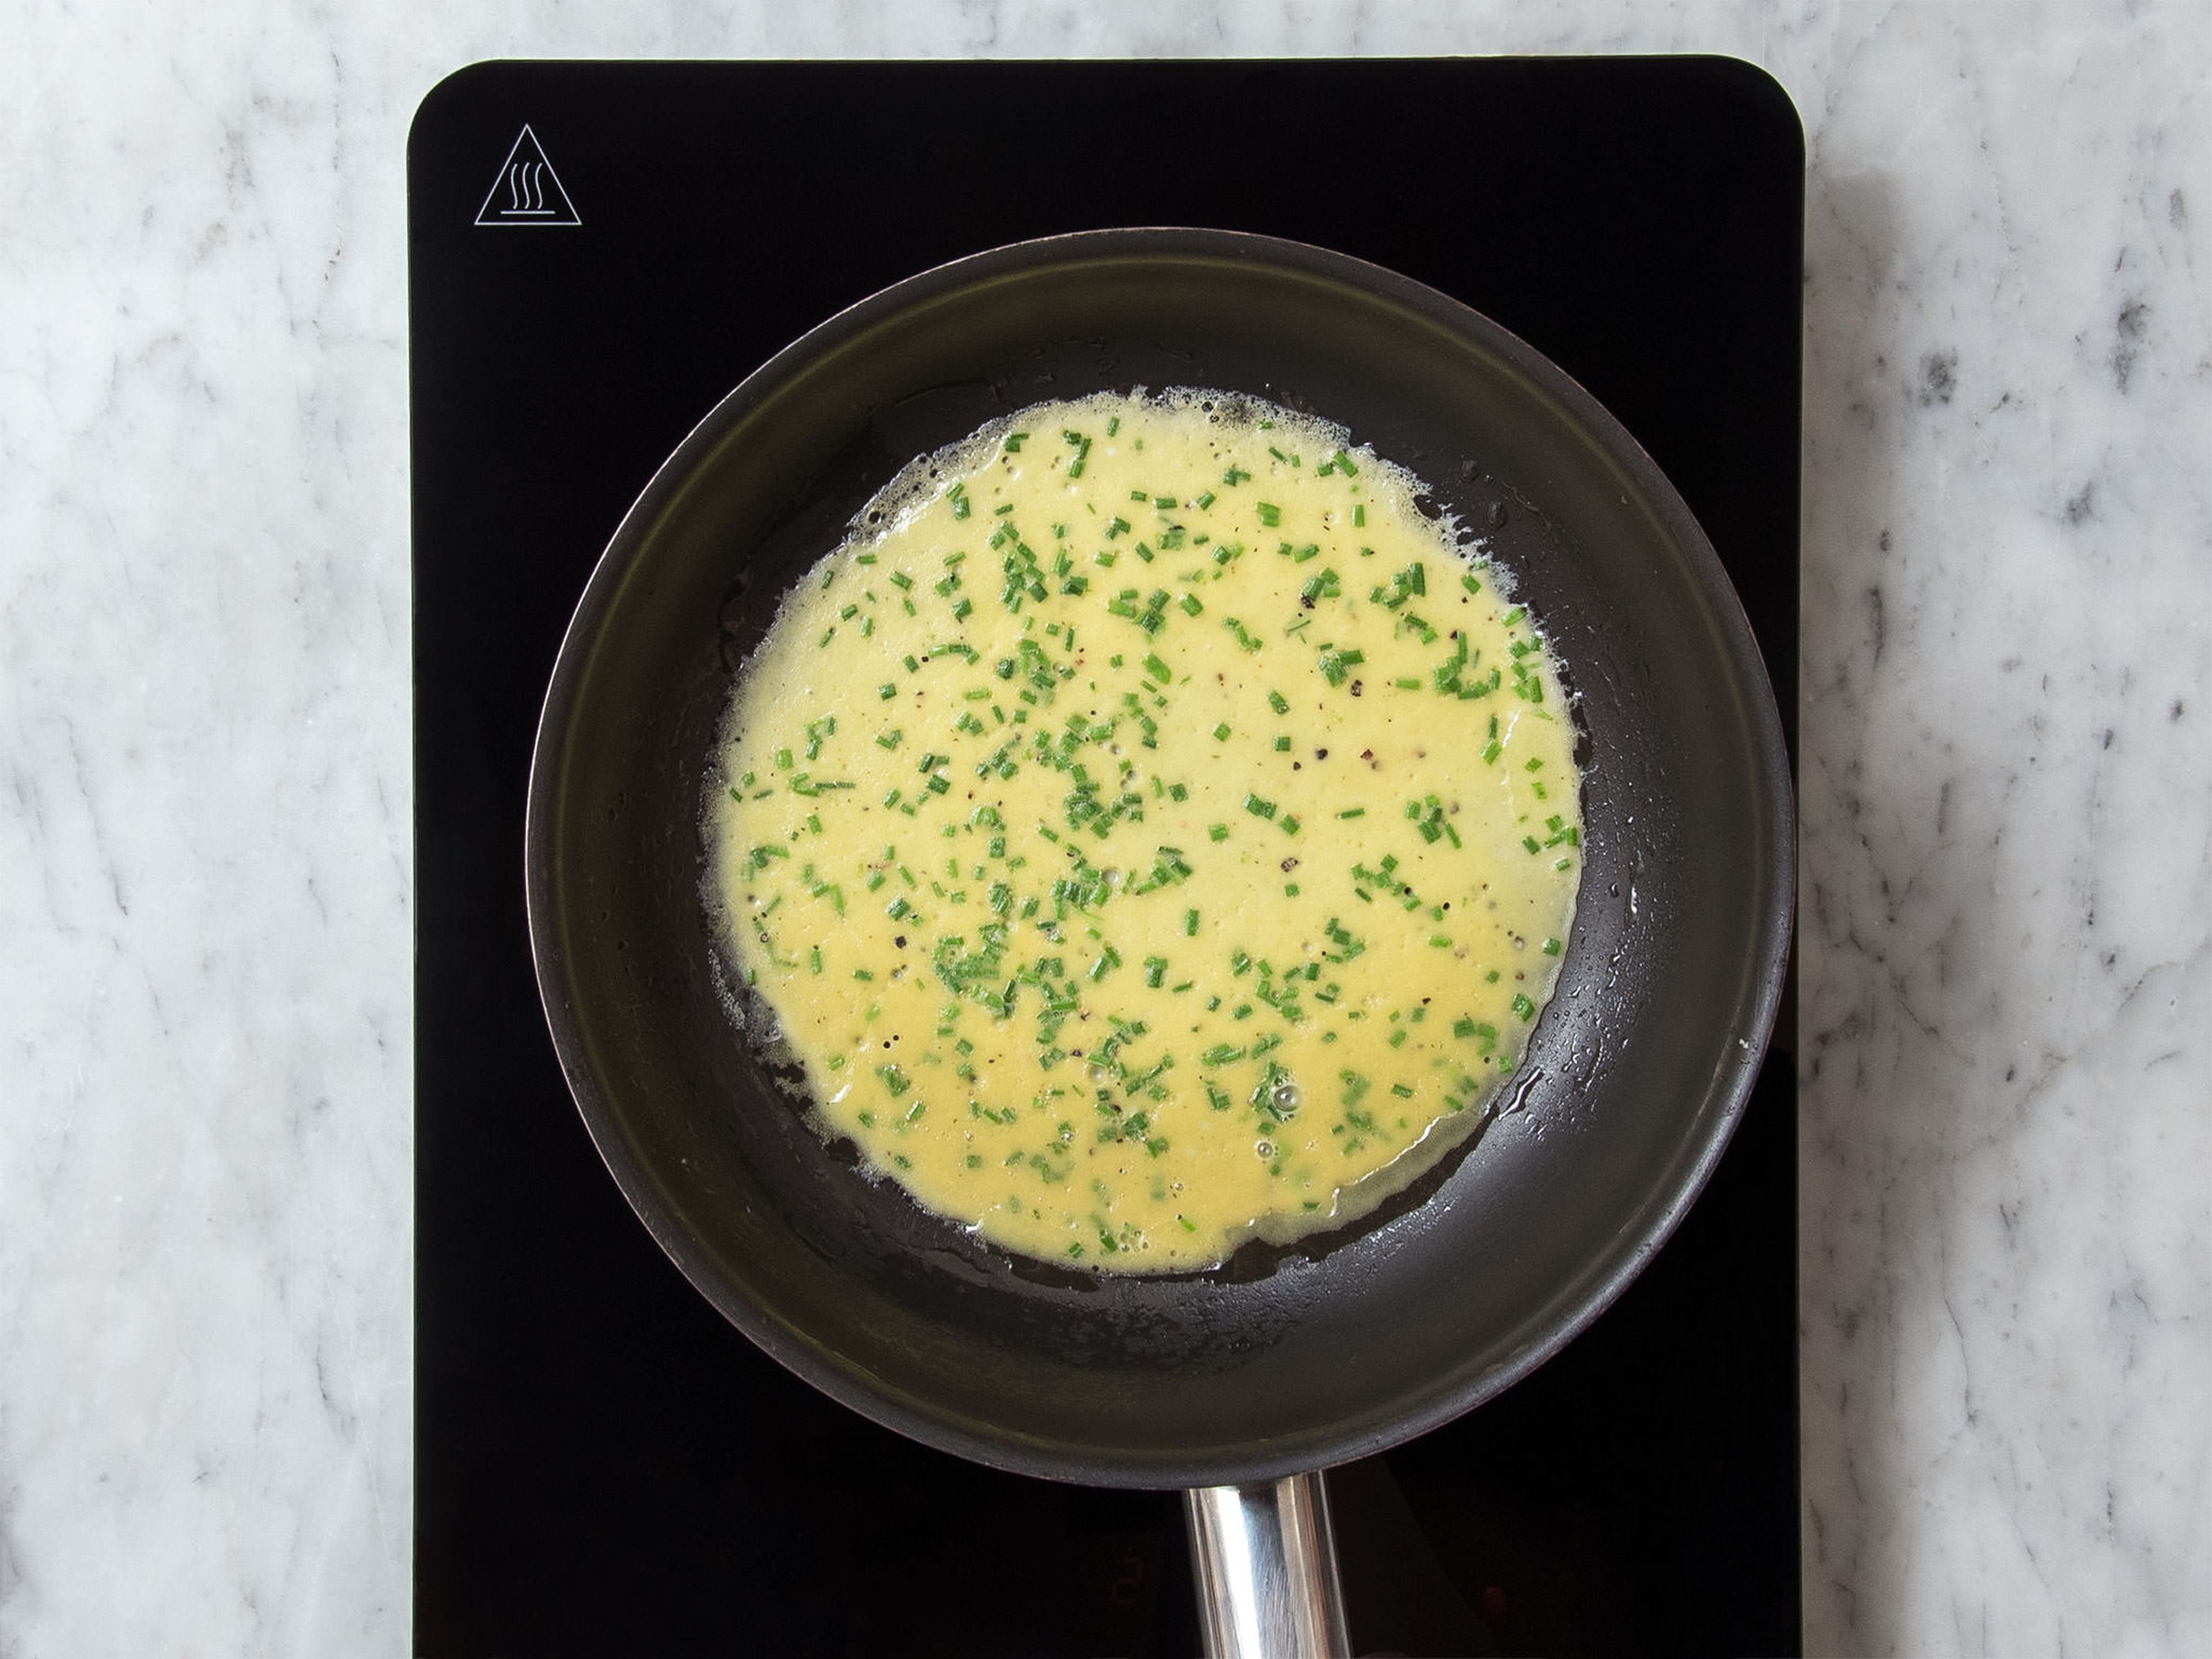 Pflanzenöl in einer beschichteten Pfanne über mittlerer Hitze erwärmen. Die Hälfte der Ei-Mischung in die Pfanne geben und ca. 2 - 3 Min. braten, bis die Eier durchgegart sind. Omelett wenden und von der anderen Seite ca. 1 Min. anbraten. Das Omelett aus der Pfanne nehmen und den Schritt mit der restlichen Ei-Mischung wiederholen.